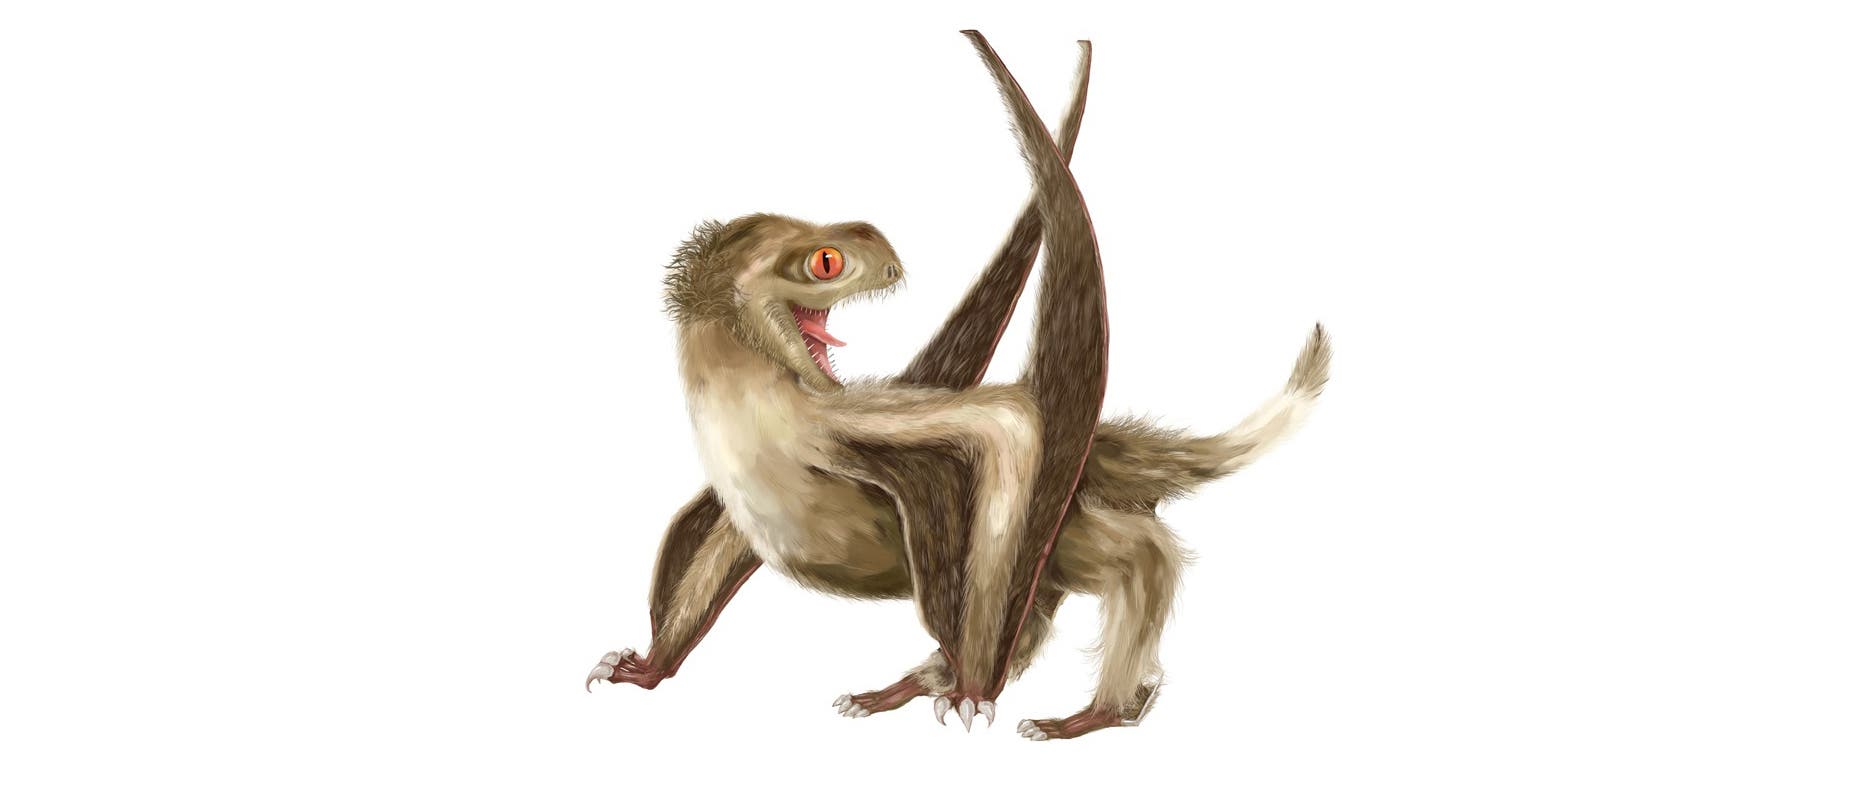 Kurzschwanz-Pterosaurier waren schon vorher sehr niedlich, schon wegen der großen Augen. Zum Kindchenschema kommt jetzt auch noch Ganzkörperflausch. Wenn es sie heute noch geben würde, wären sie wahrscheinlich beliebter ais Katzen (vorausgesetzt, sie wären stubenrein).